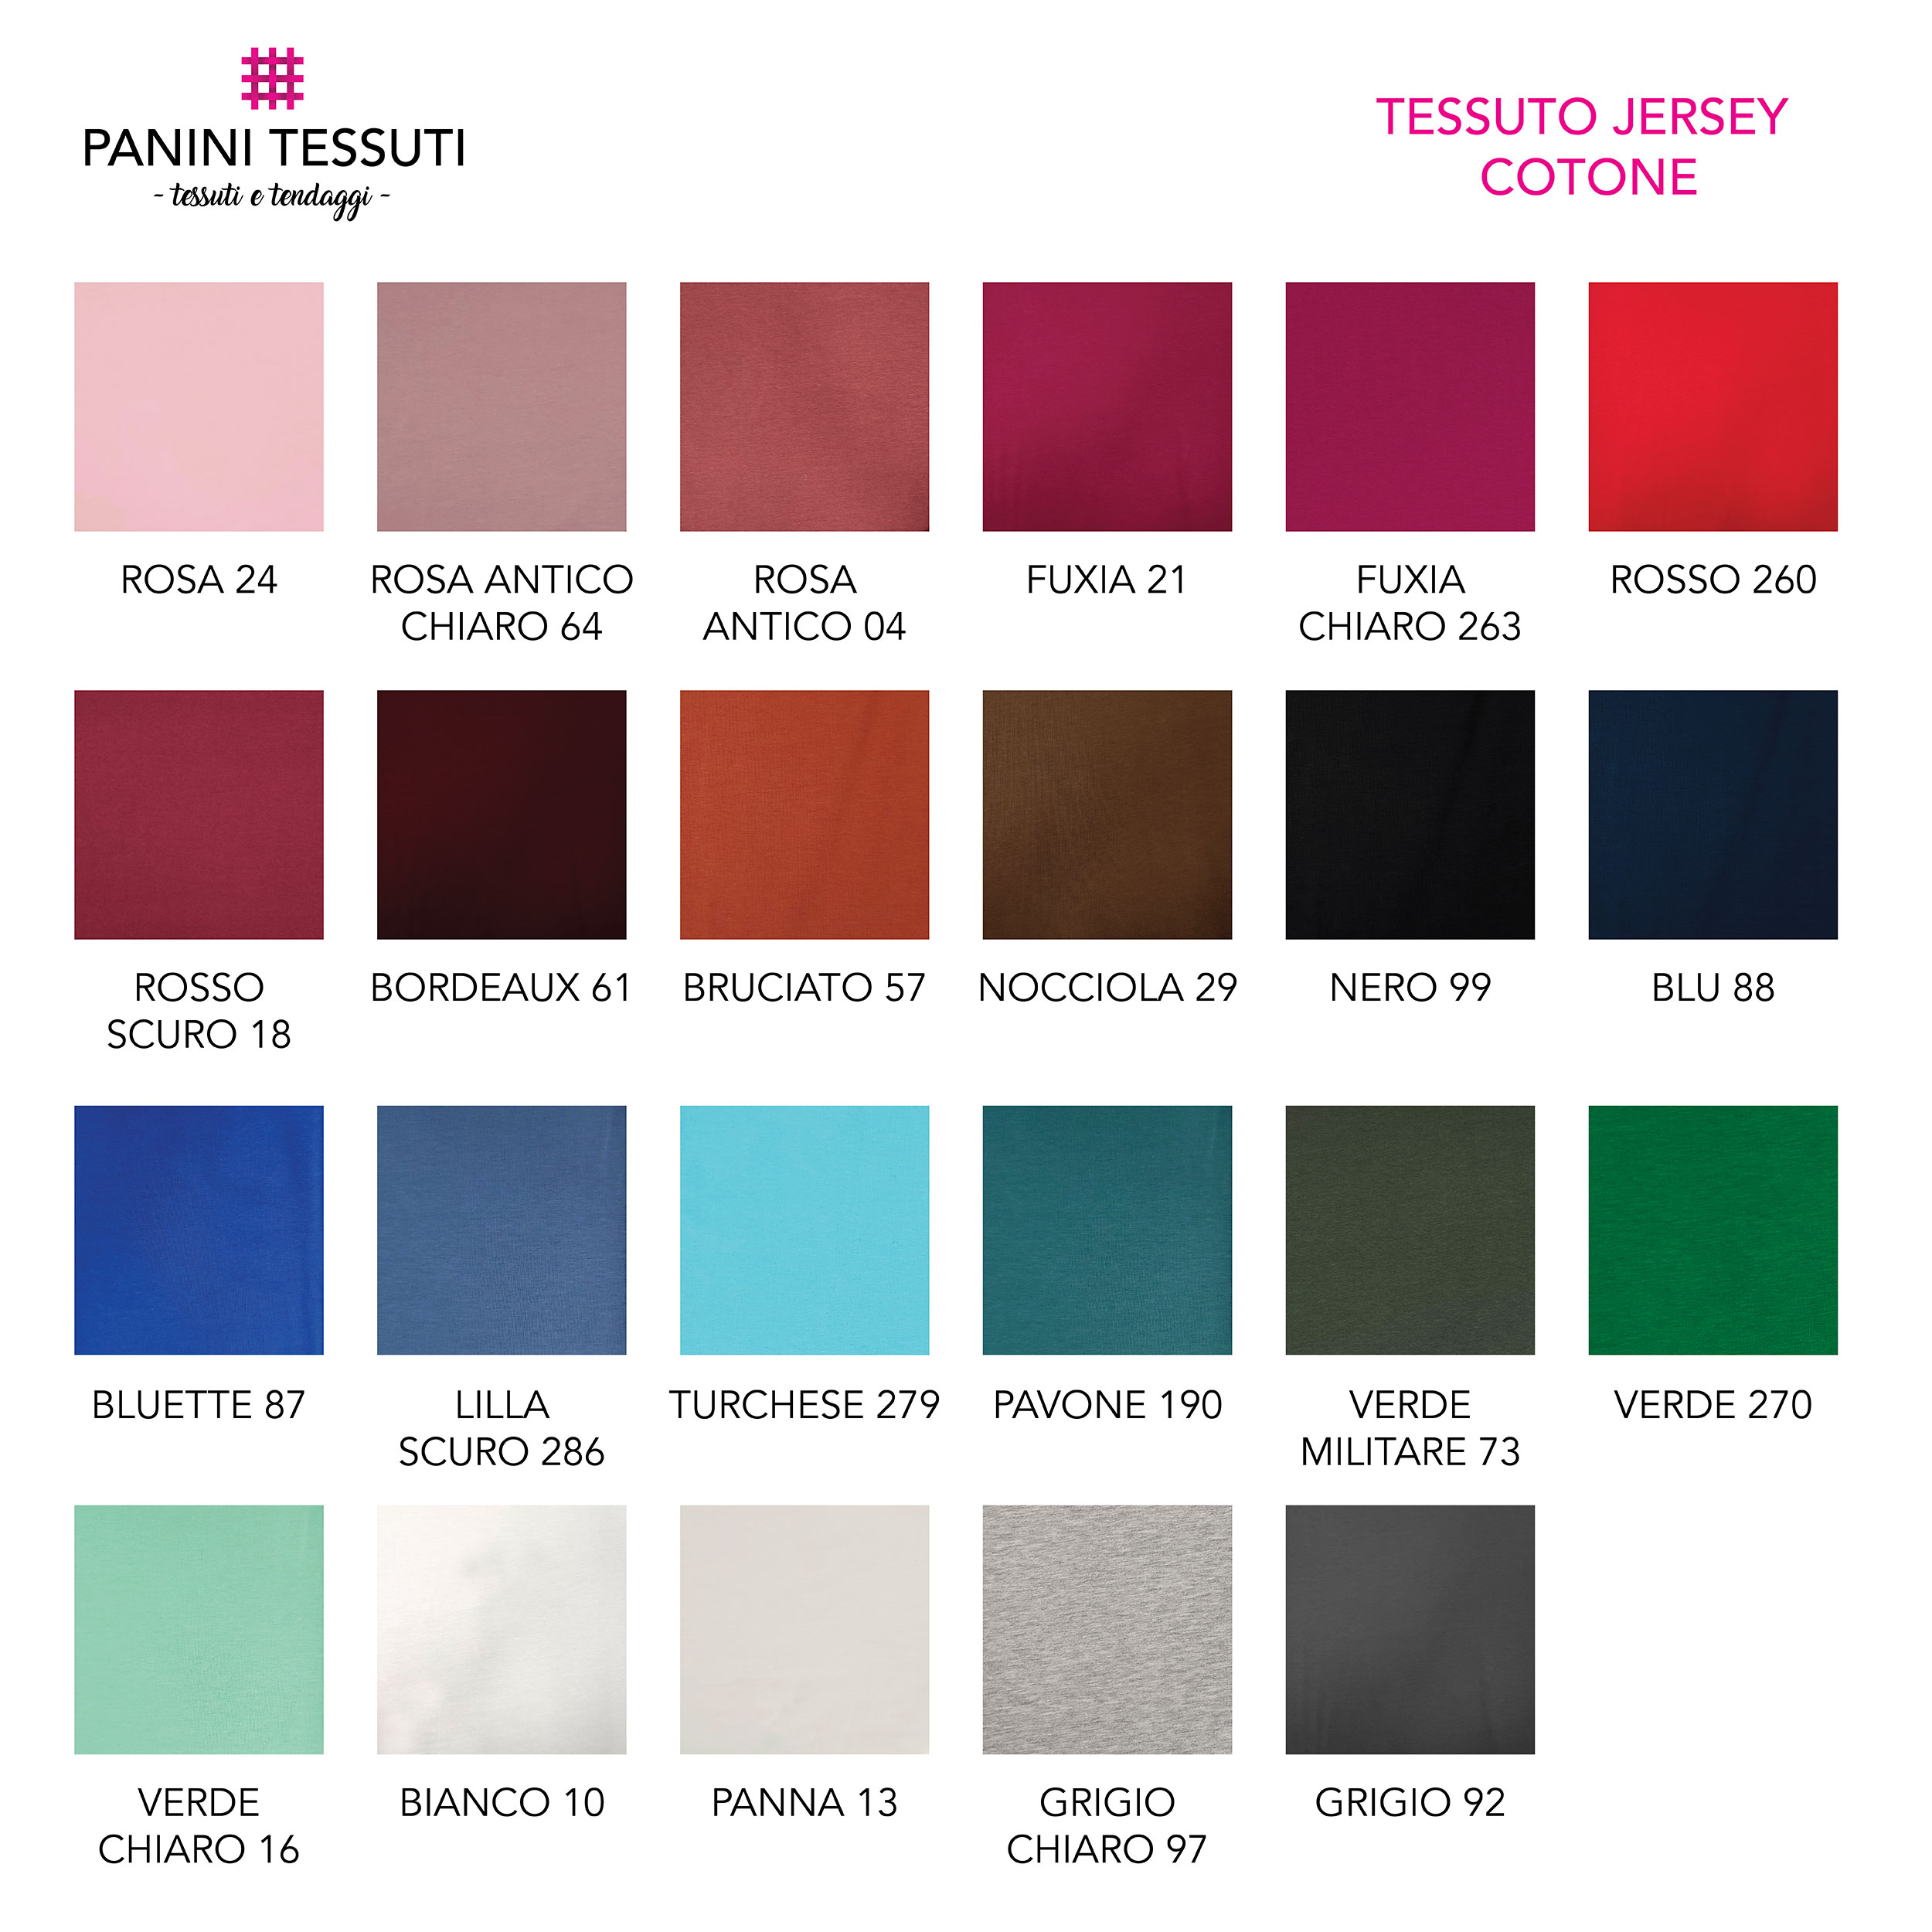 tessuto-jersey-cotone-bielastico-colori